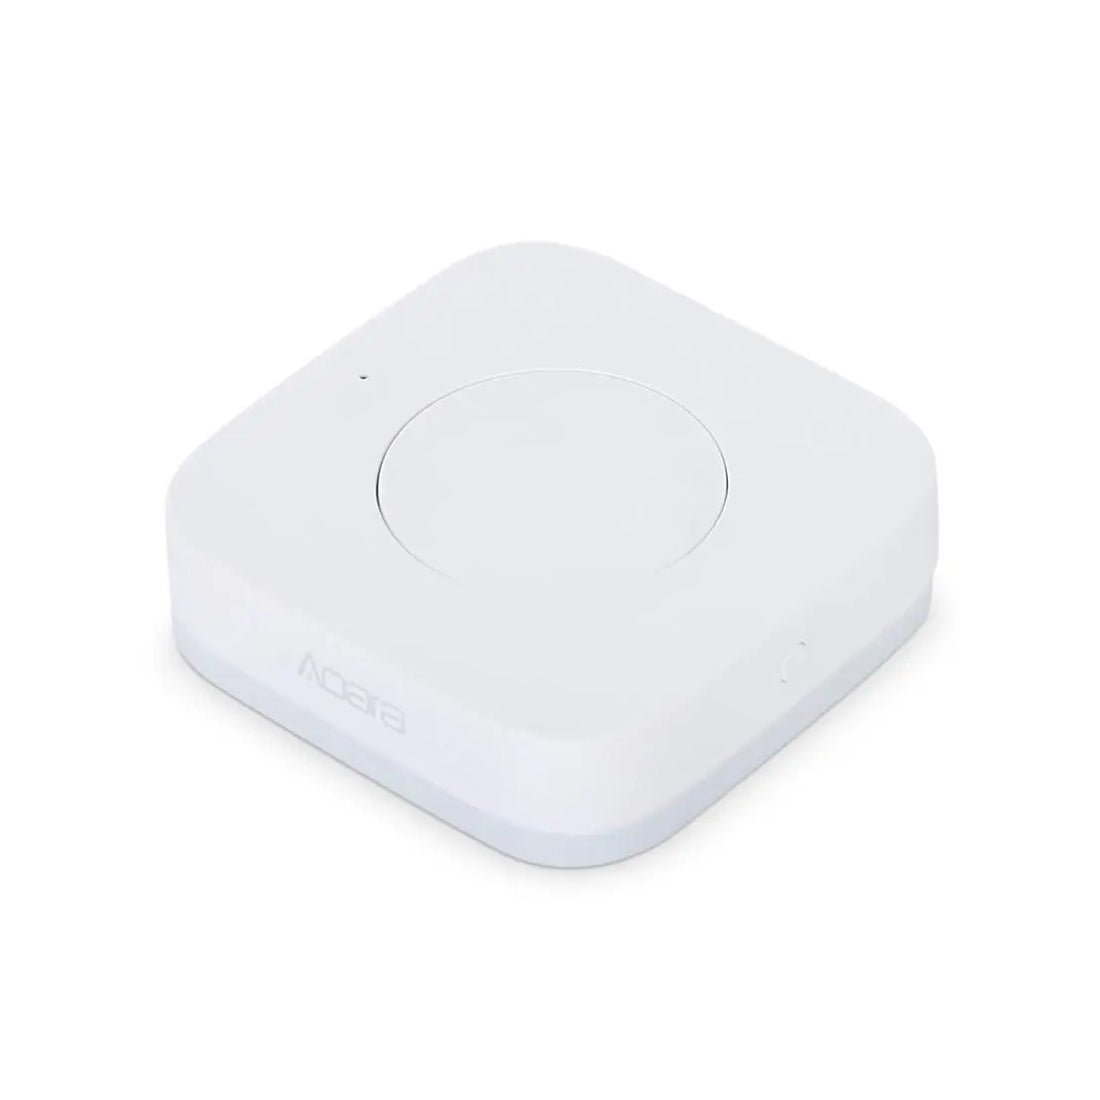 Aqara Wireless Mini Switch - أكسسوار ذكي - Store 974 | ستور ٩٧٤